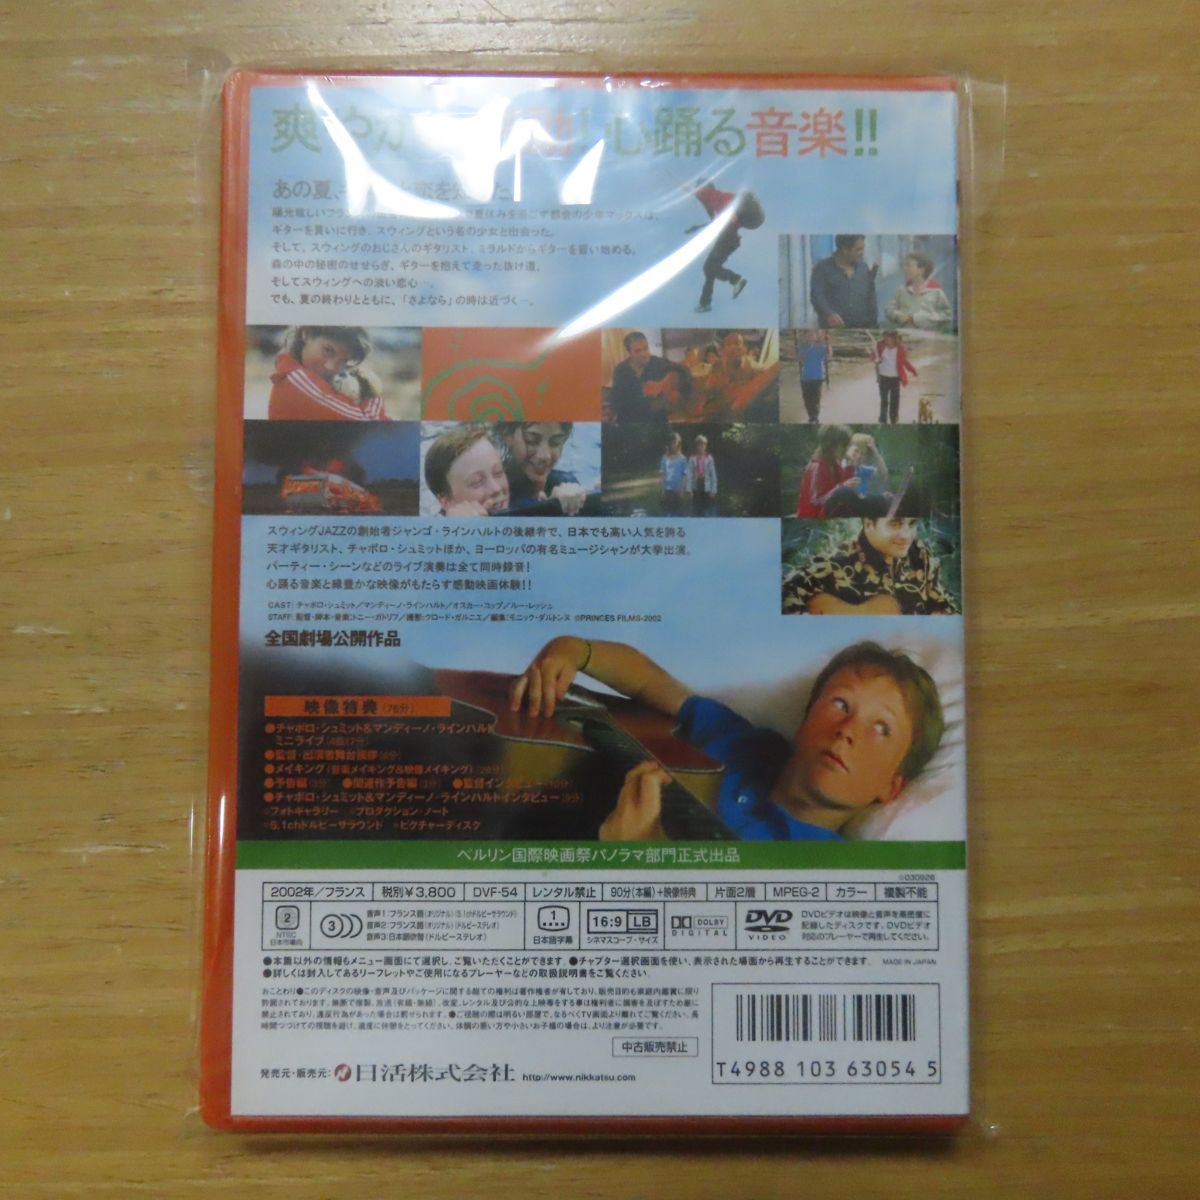 4988103630545; /DVD 僕のスウィング /(その他)｜売買された ...